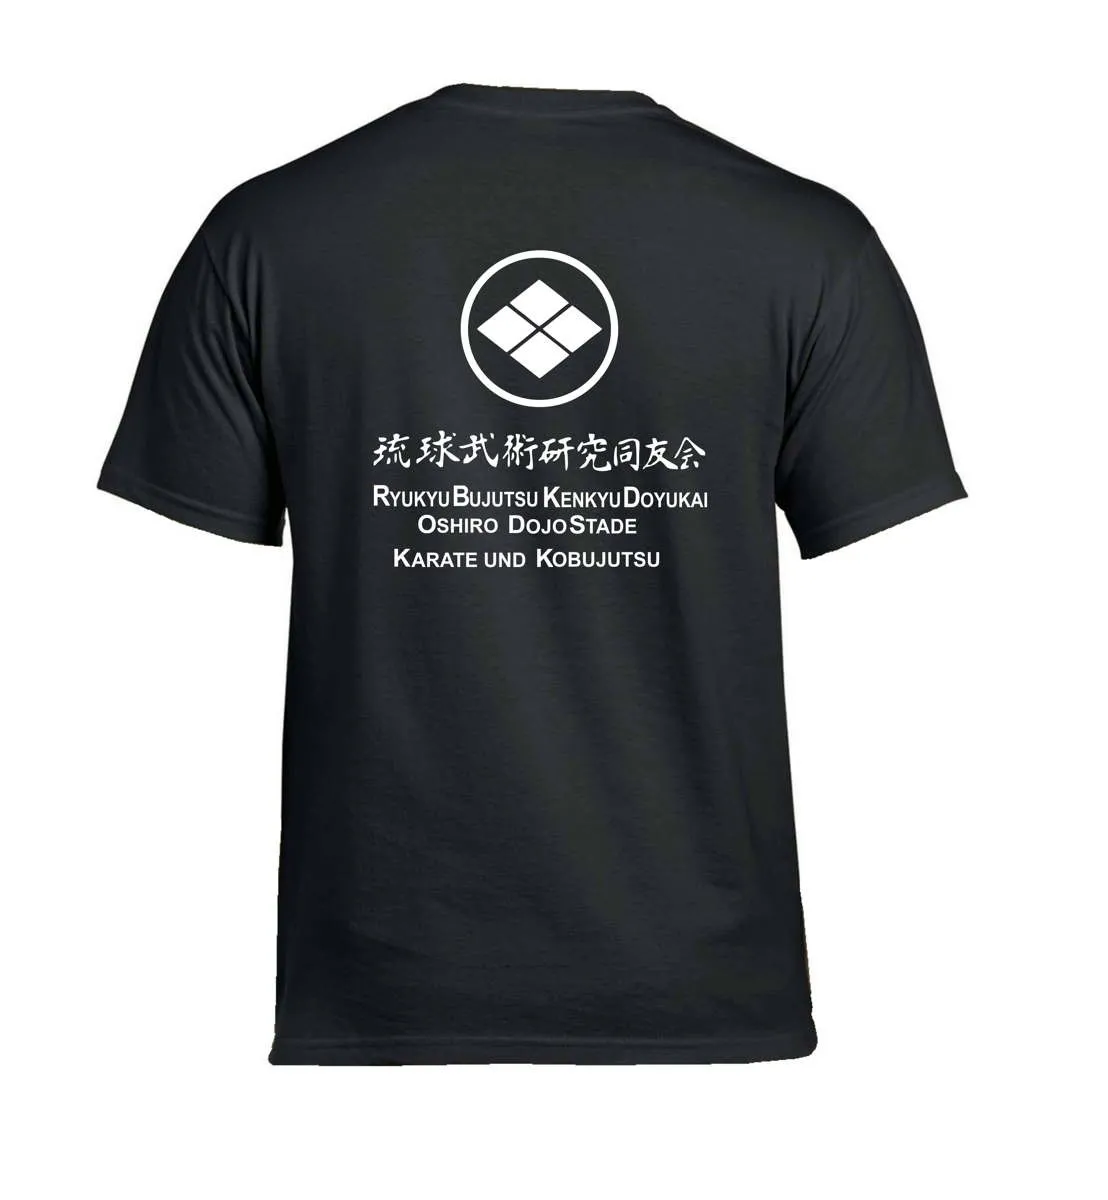 T-Shirt Oshiro Dojo Stade schwarz